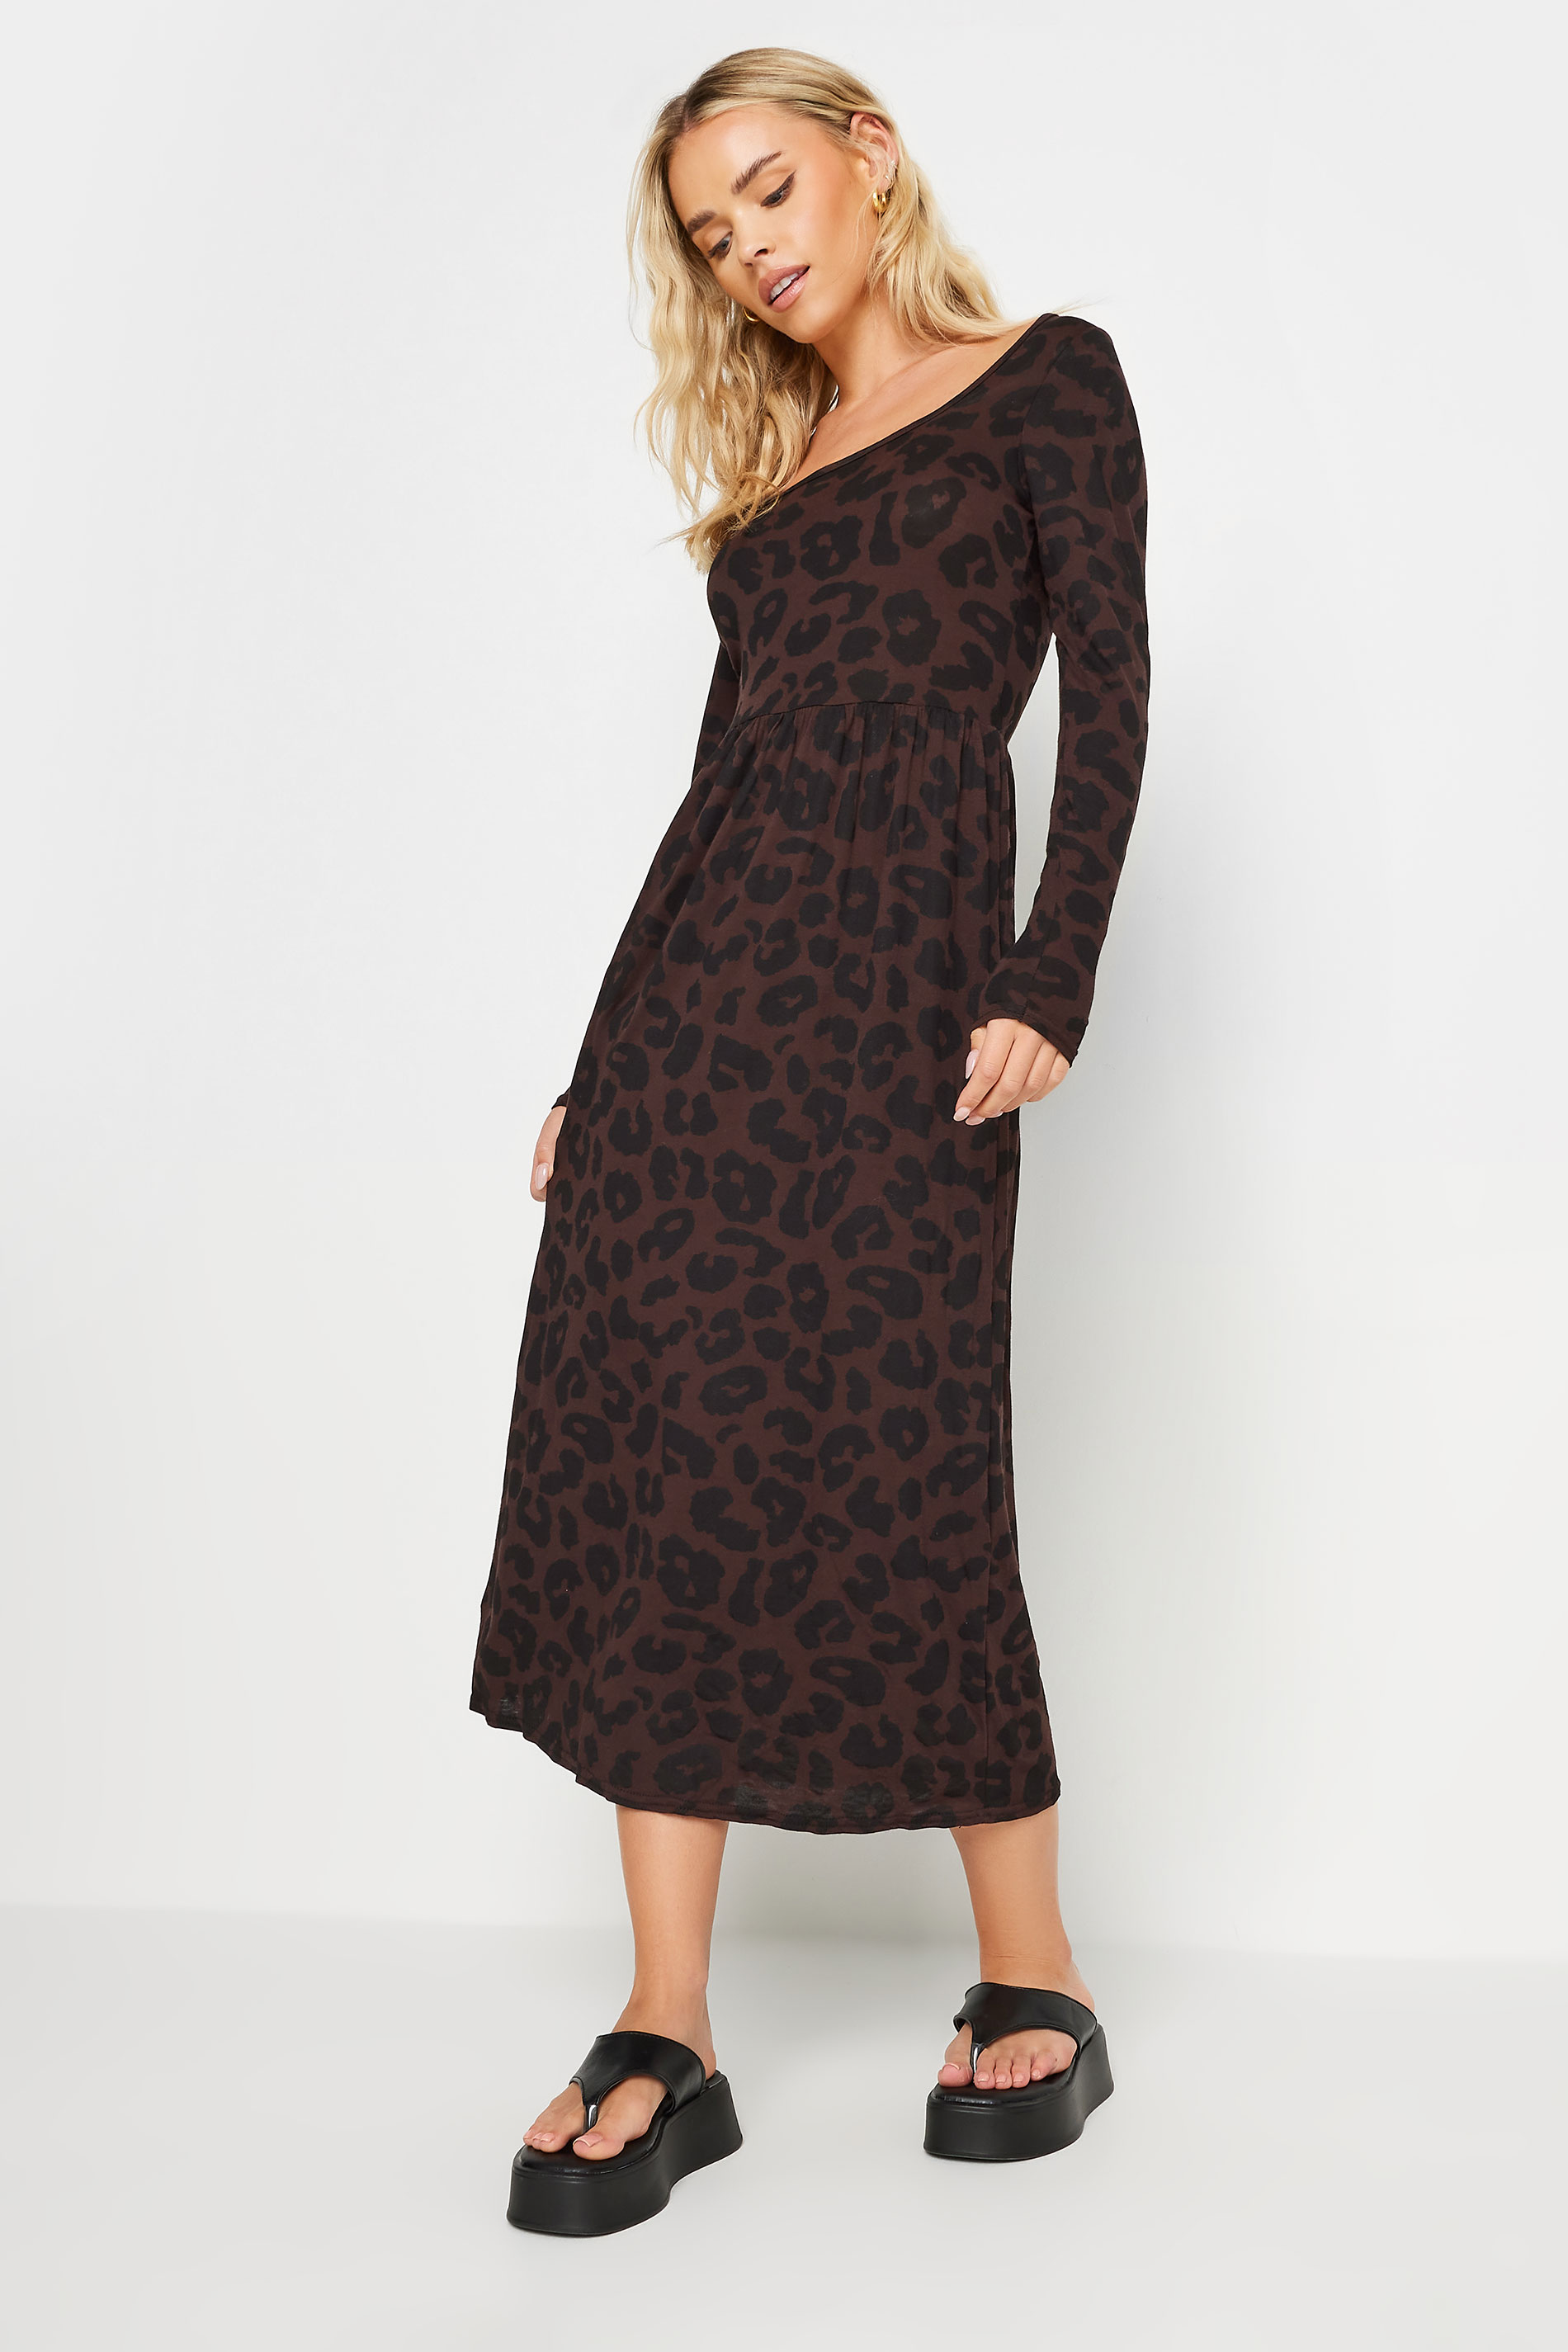 PixieGirl Petite Brown Leopard Print Long Sleeve Midi Dress | PixieGirl  2